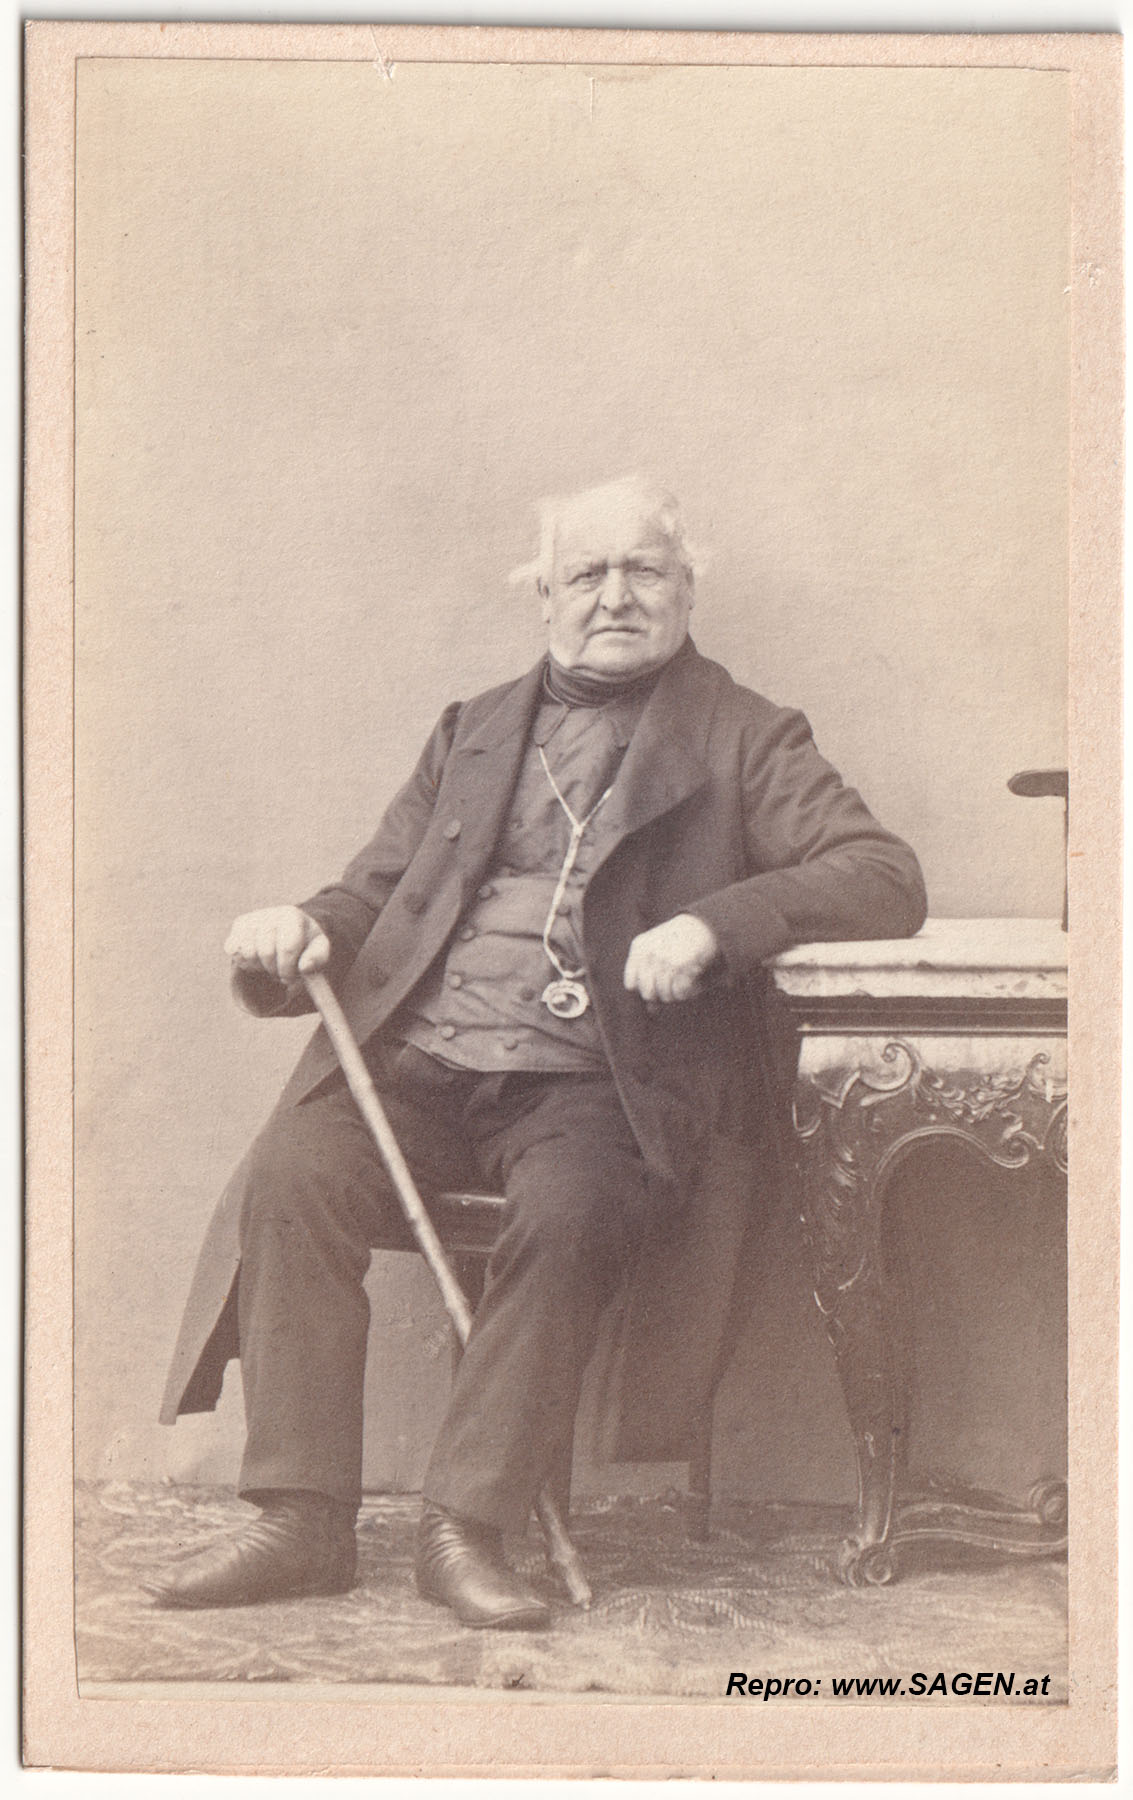 CdV Porträt eines Herren 1860er Jahre